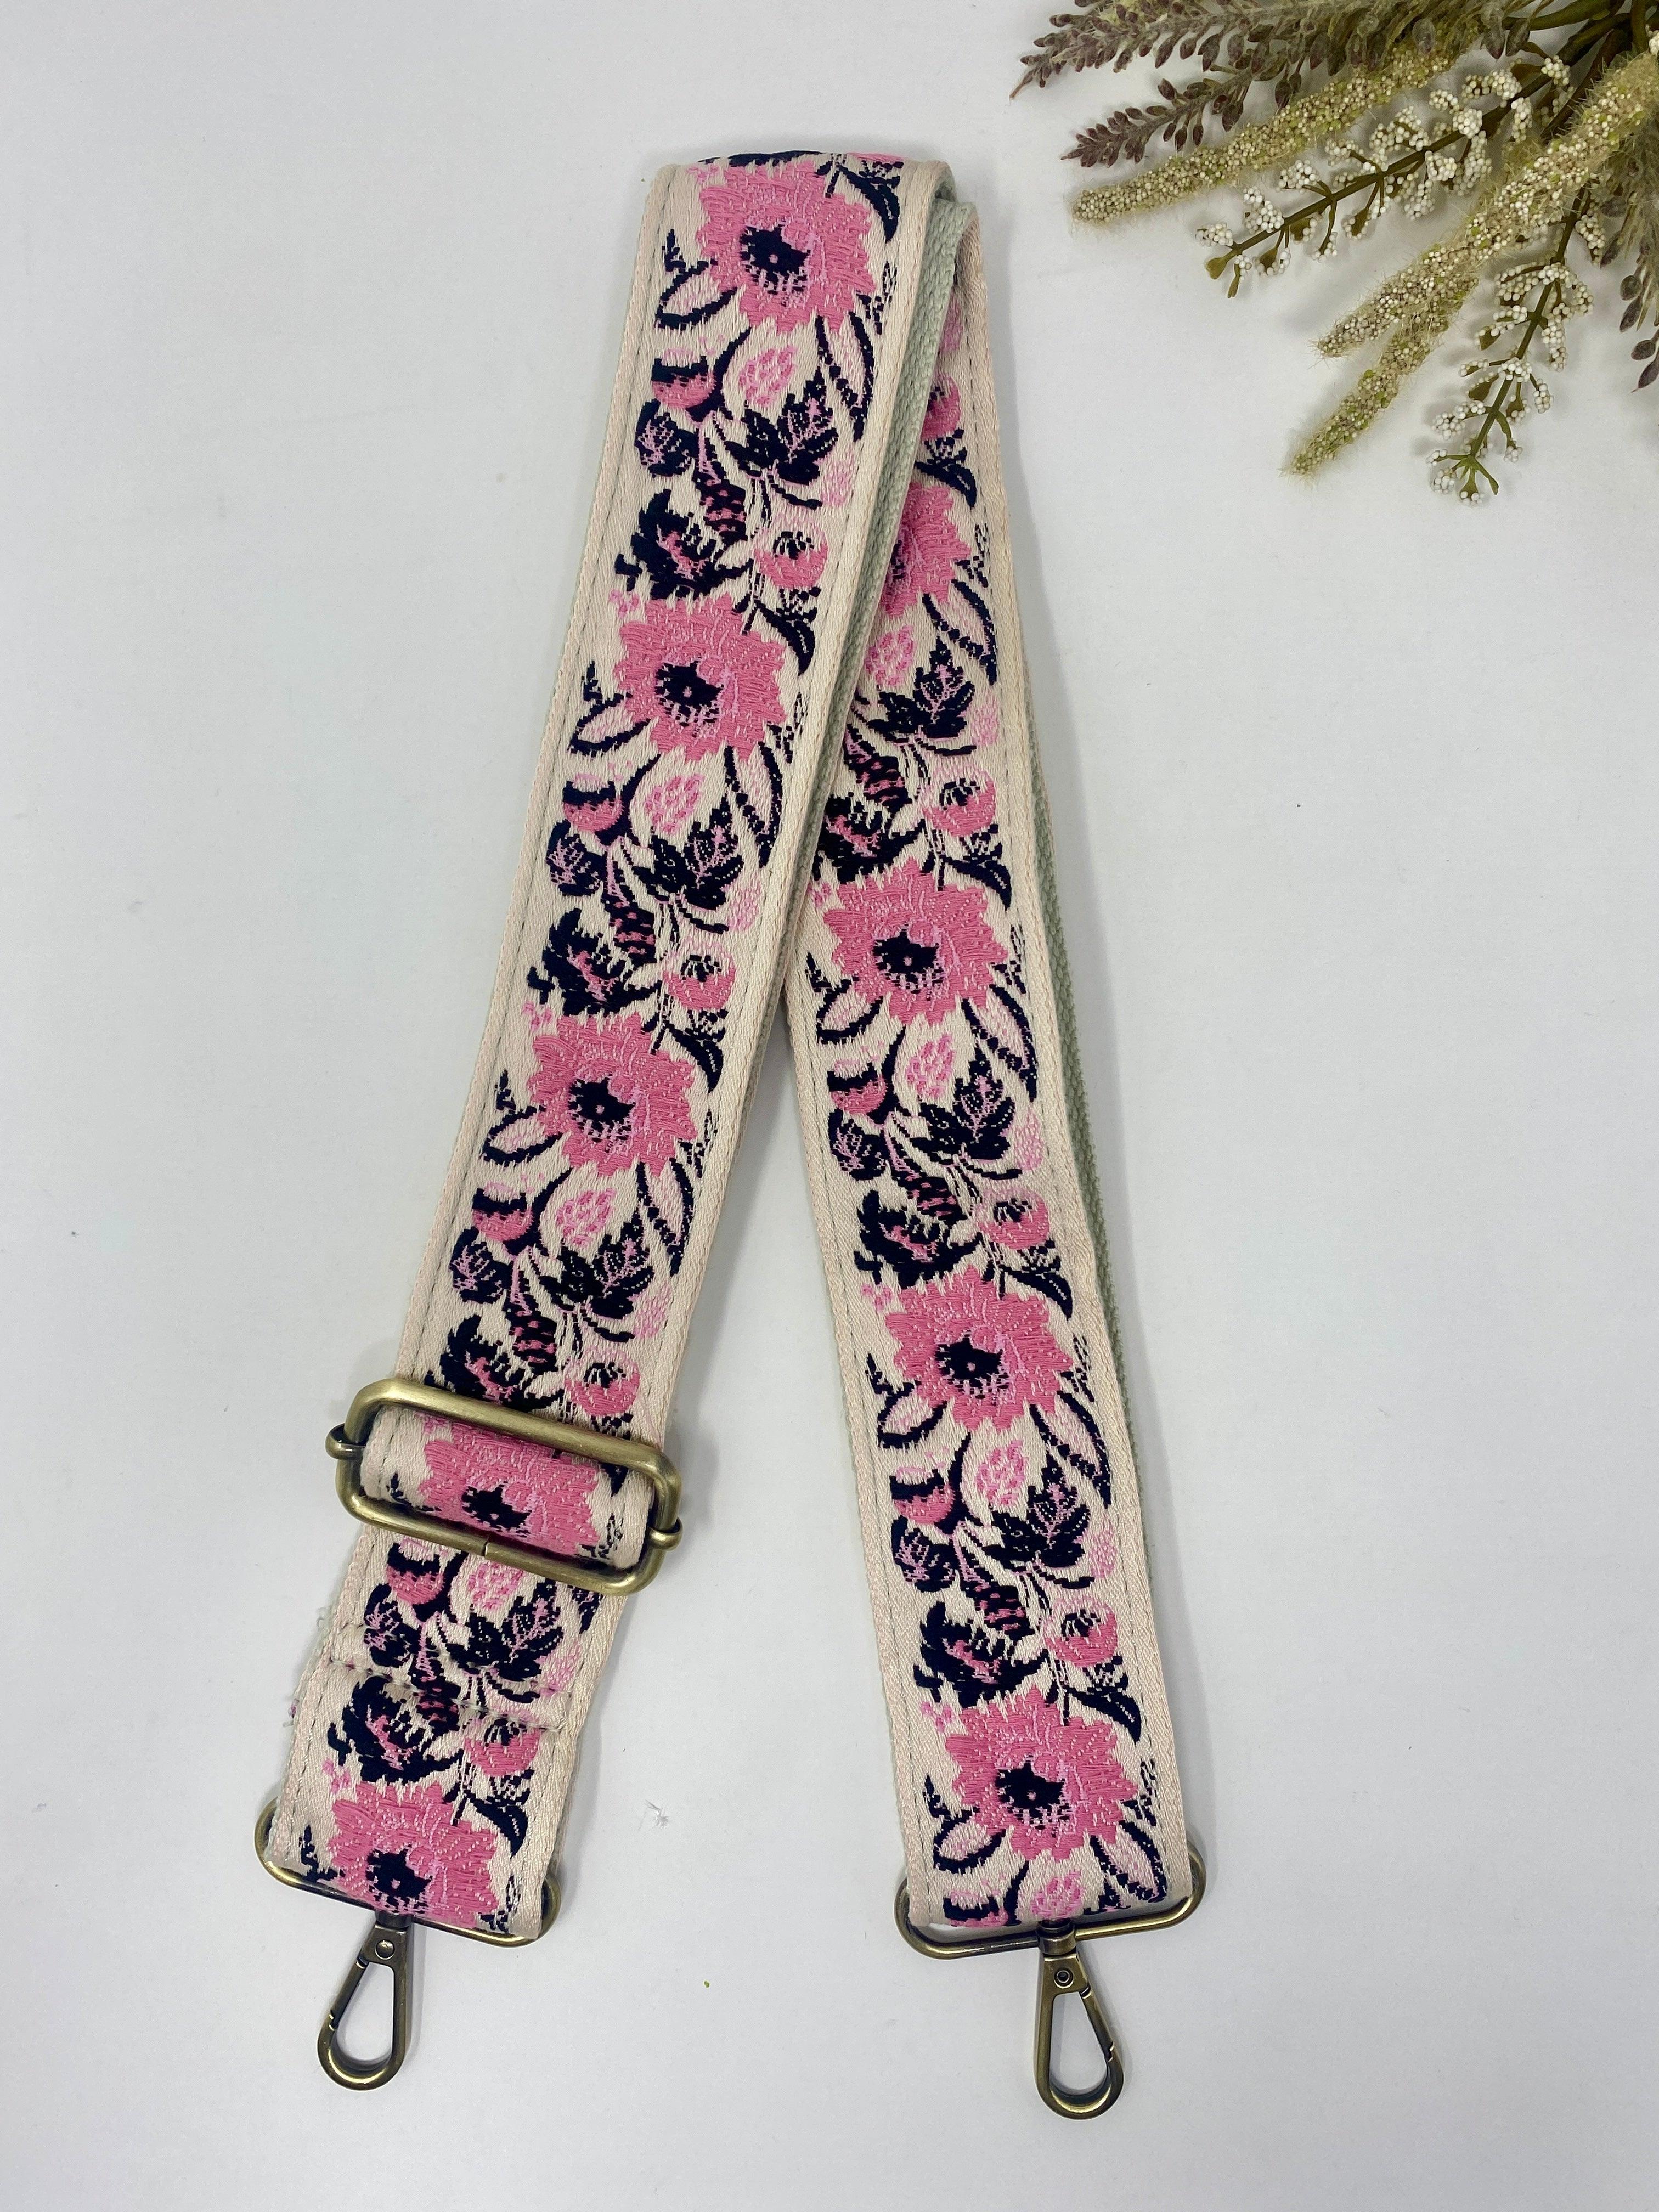 Petals & Pink Embroidered Guitar Straps - Vintage Soul